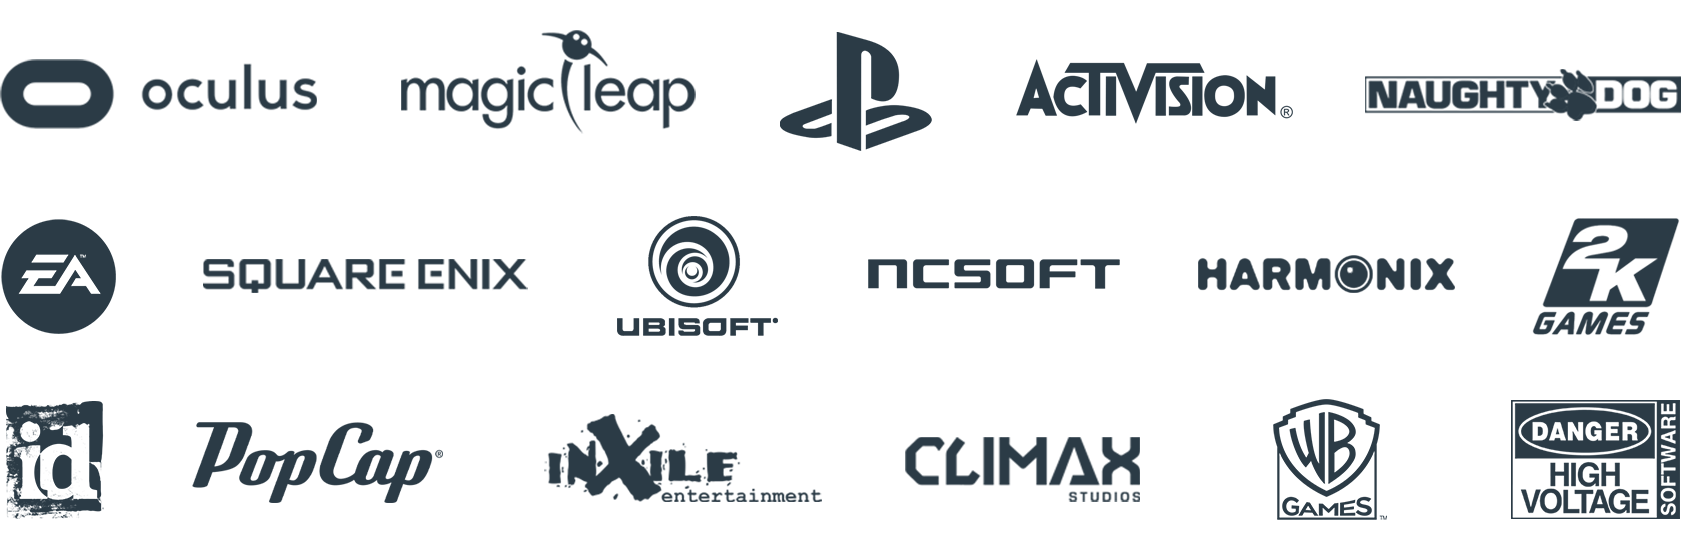 Логотипы игровых компаний. Логотипы известных игровых компаний. Фирмы компьютерных игр. Популярные игровые фирмы.